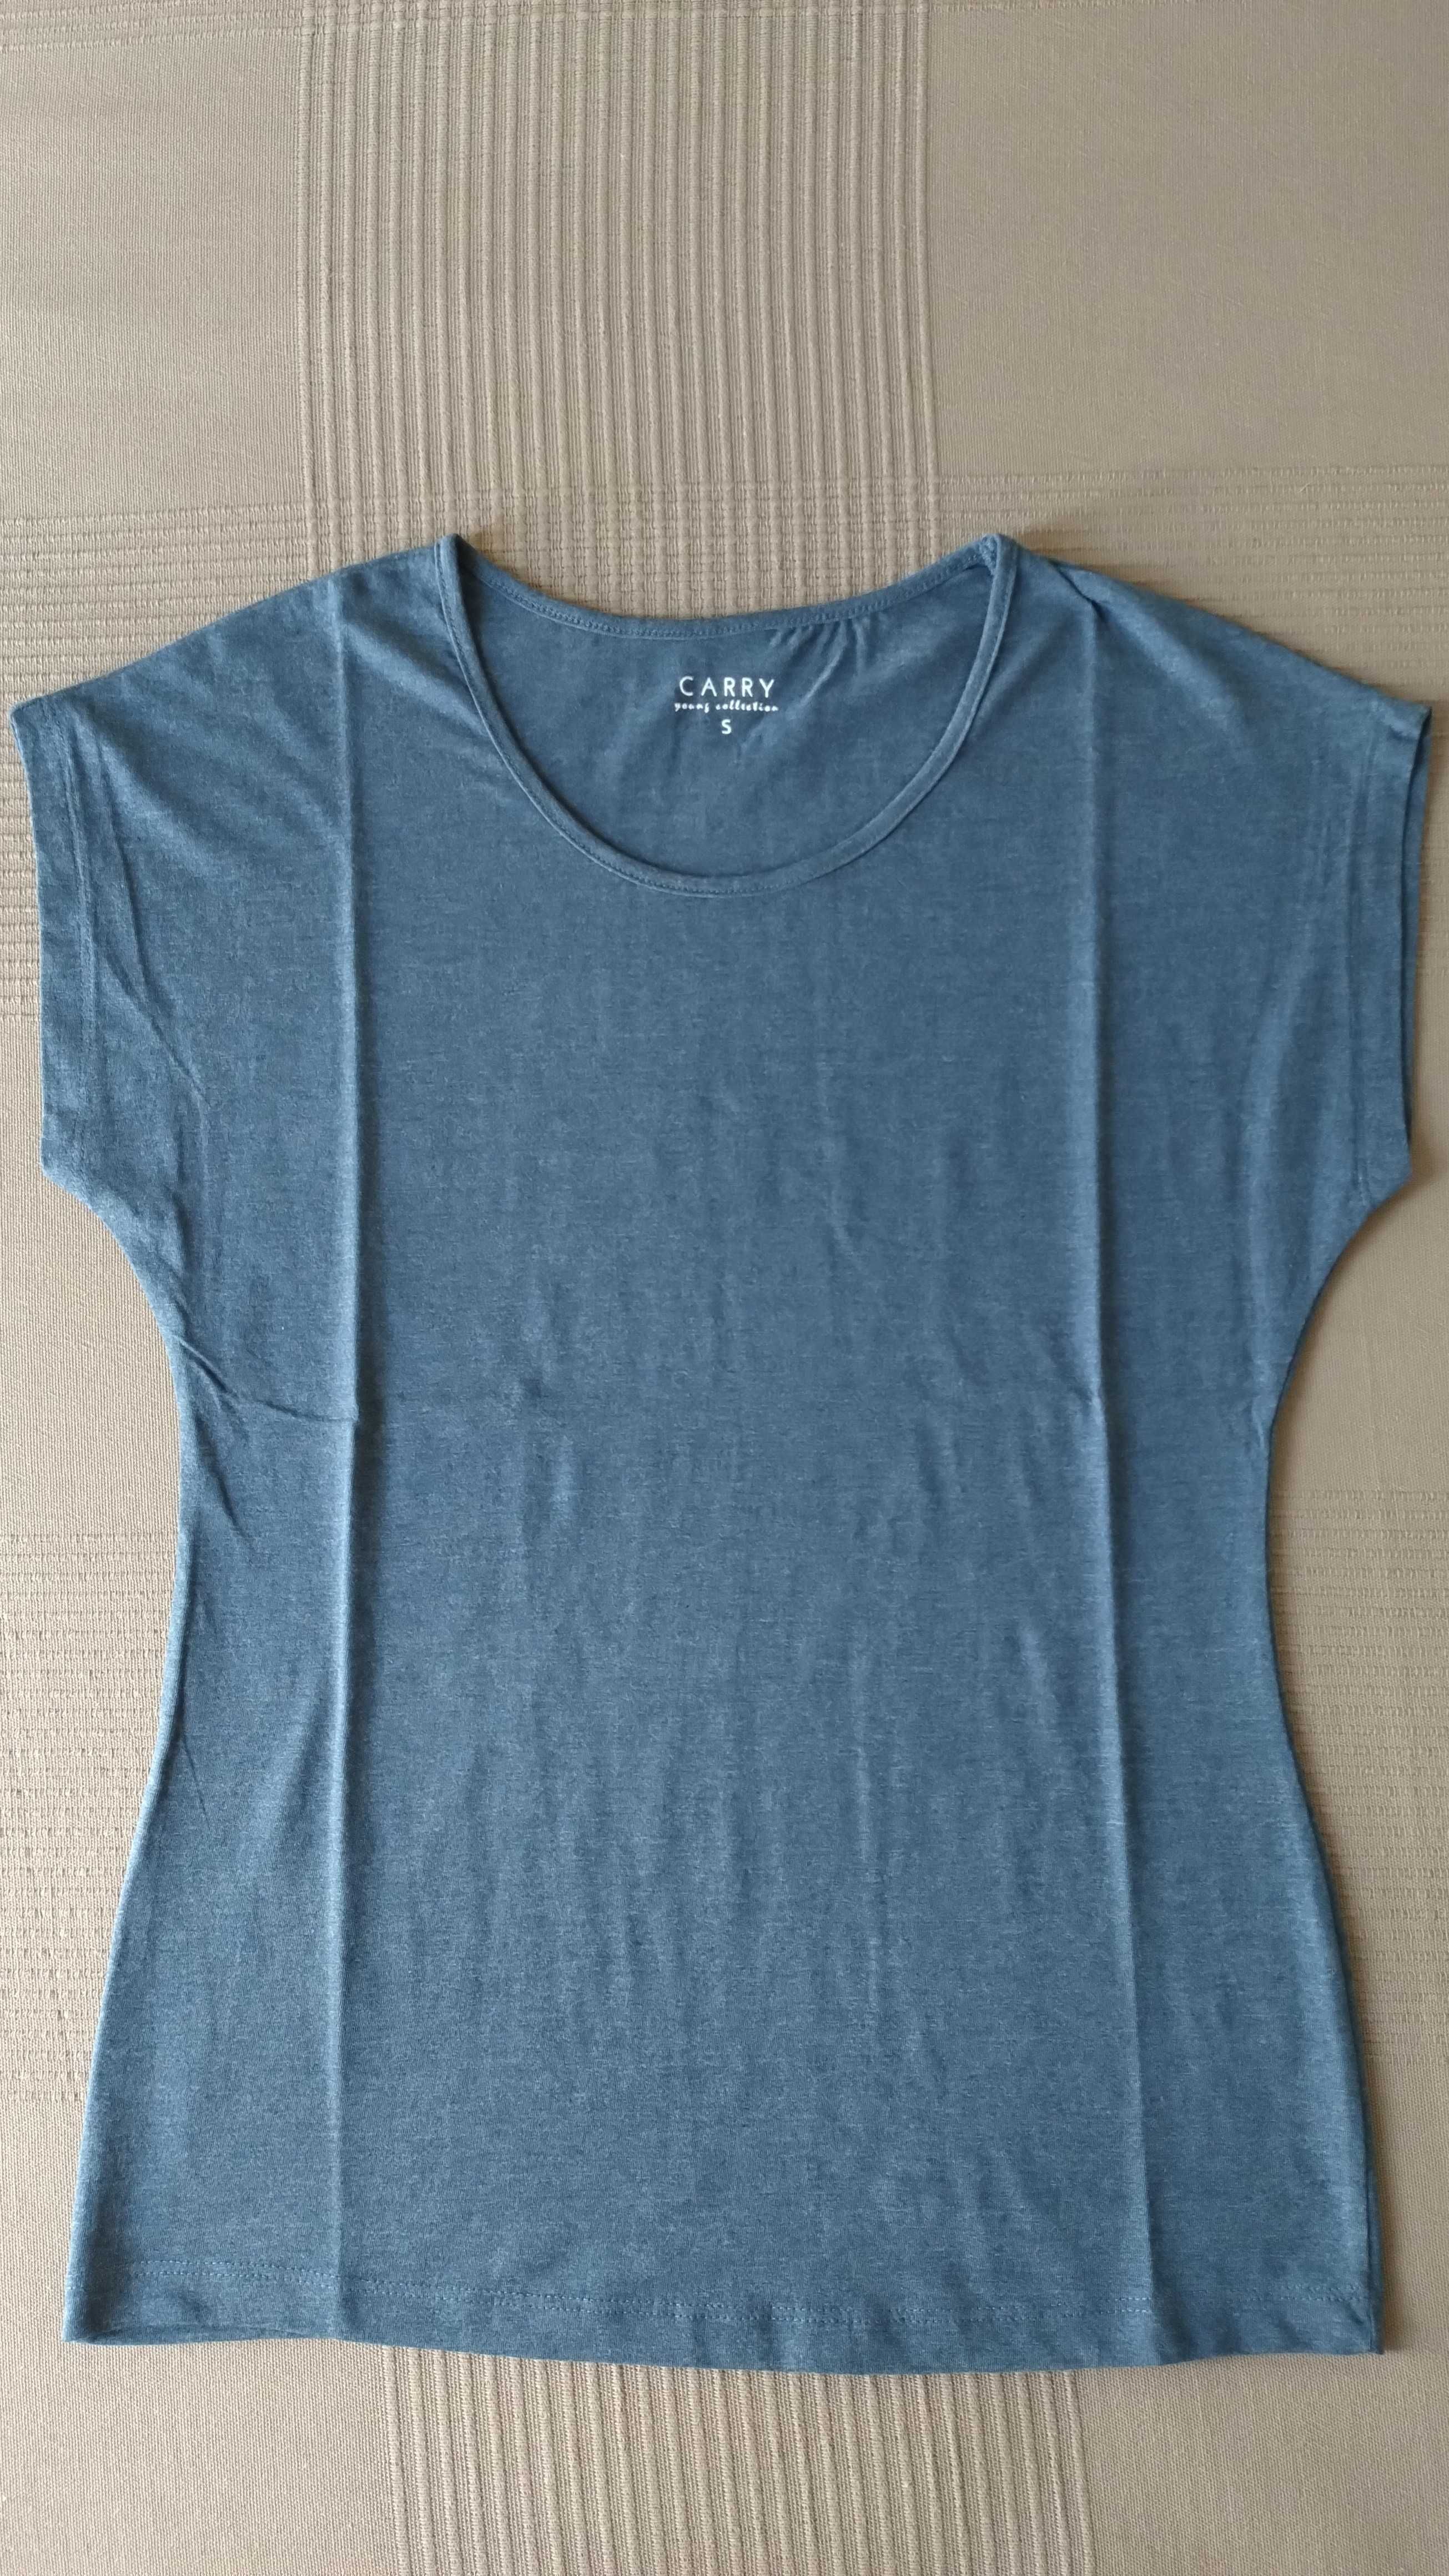 Nowy t-shirt damski Carry - rozmiar S